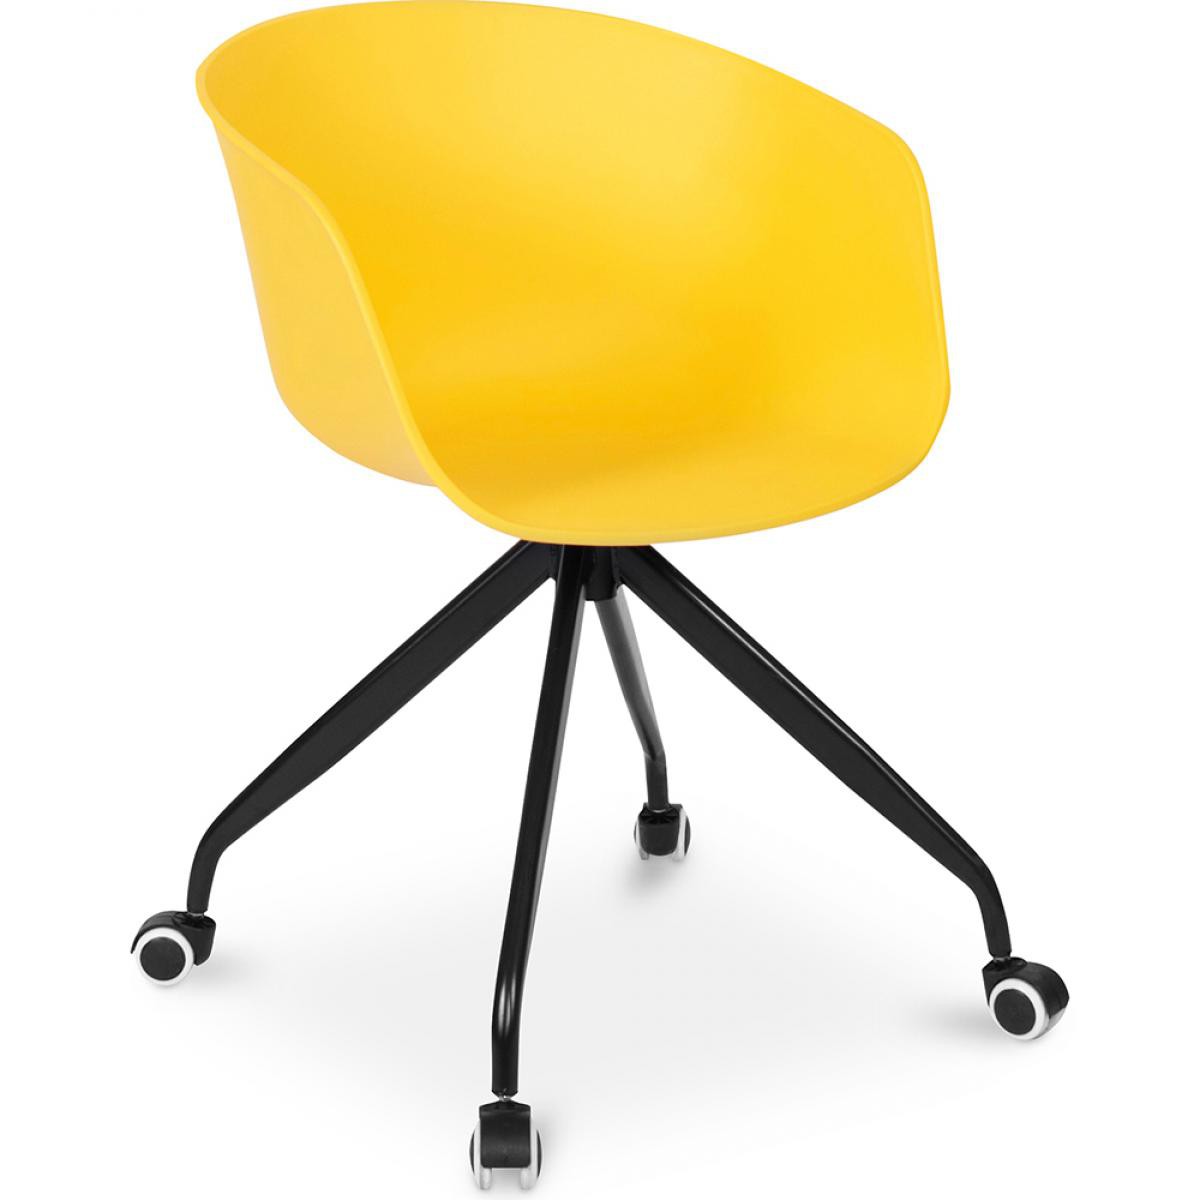 Privatefloor - Chaise de bureau design avec roues - Chaises